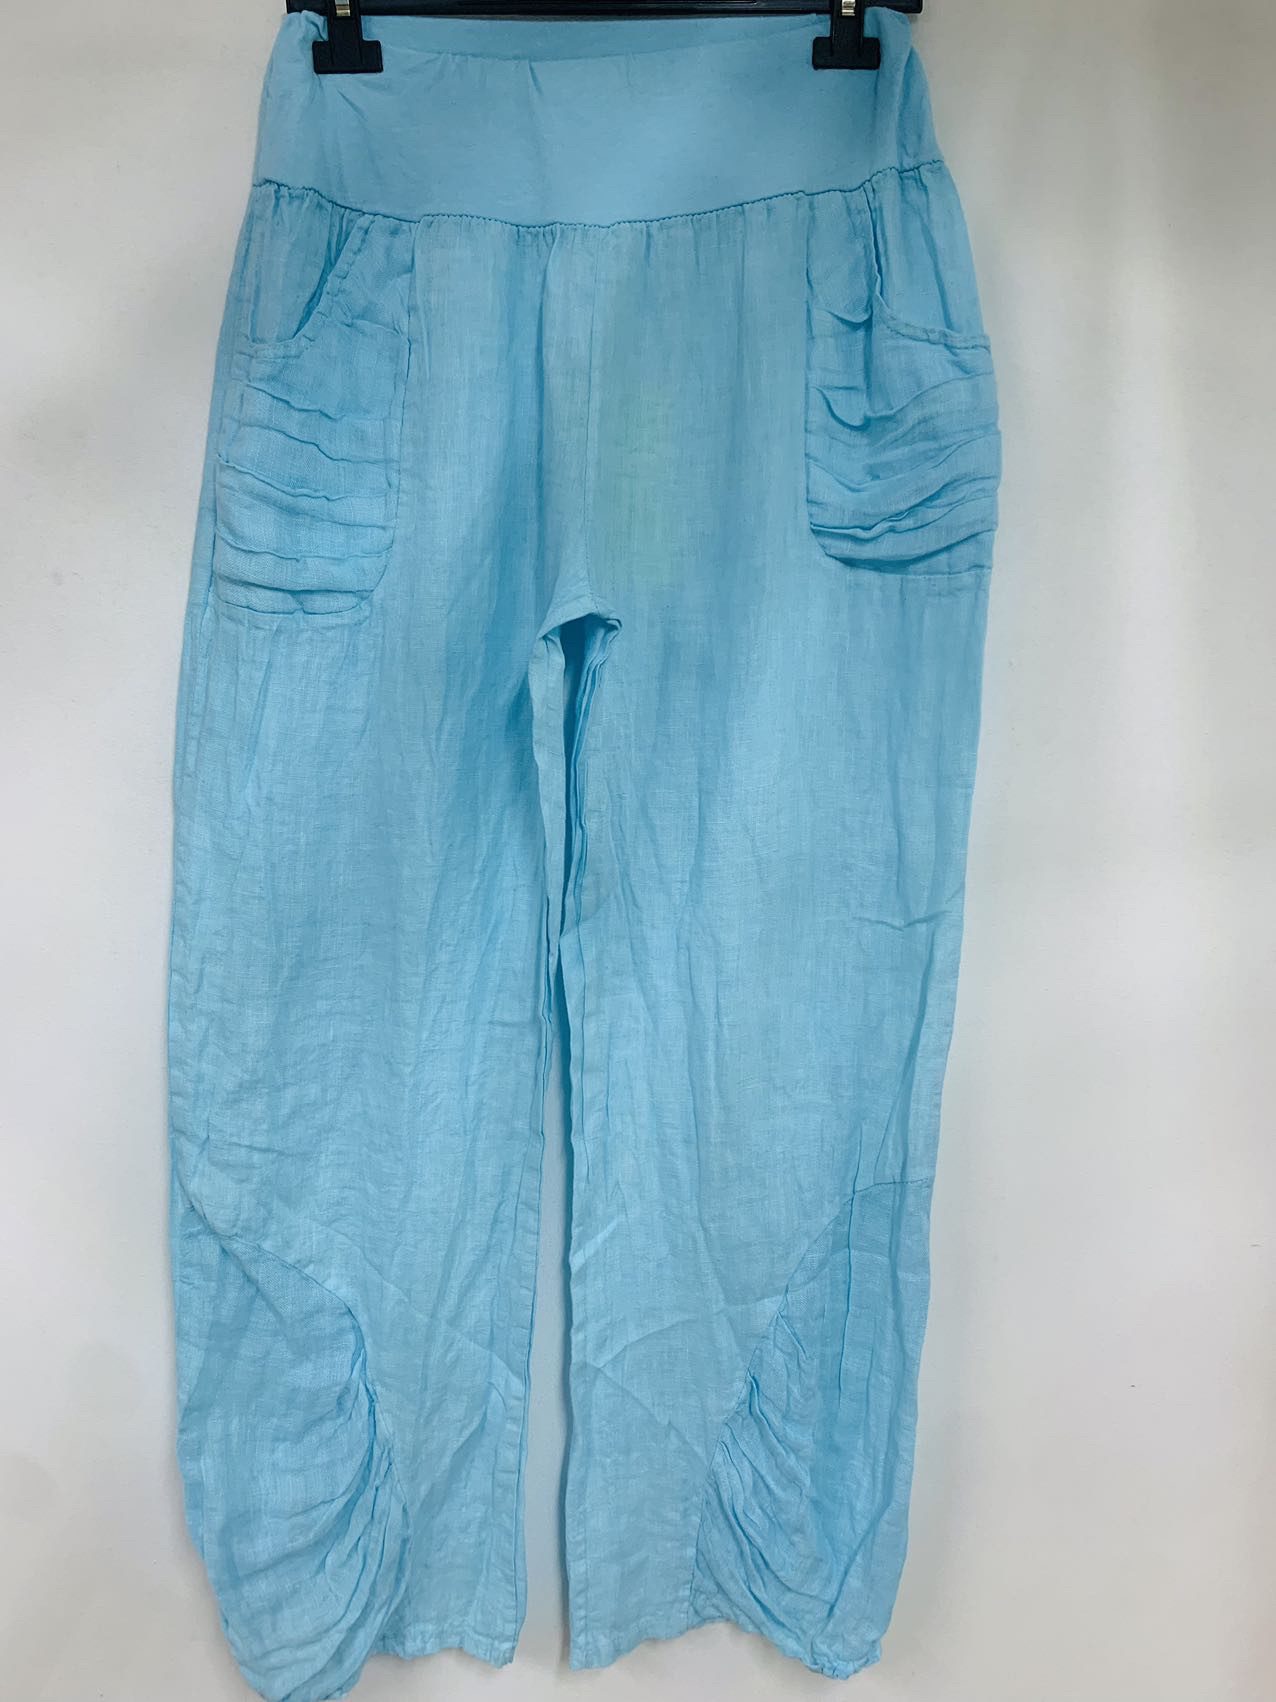 Boho linnen broek met elastische talie - steekzakken - brede pijpen - kleur BABY BLAUW- maat 36/38